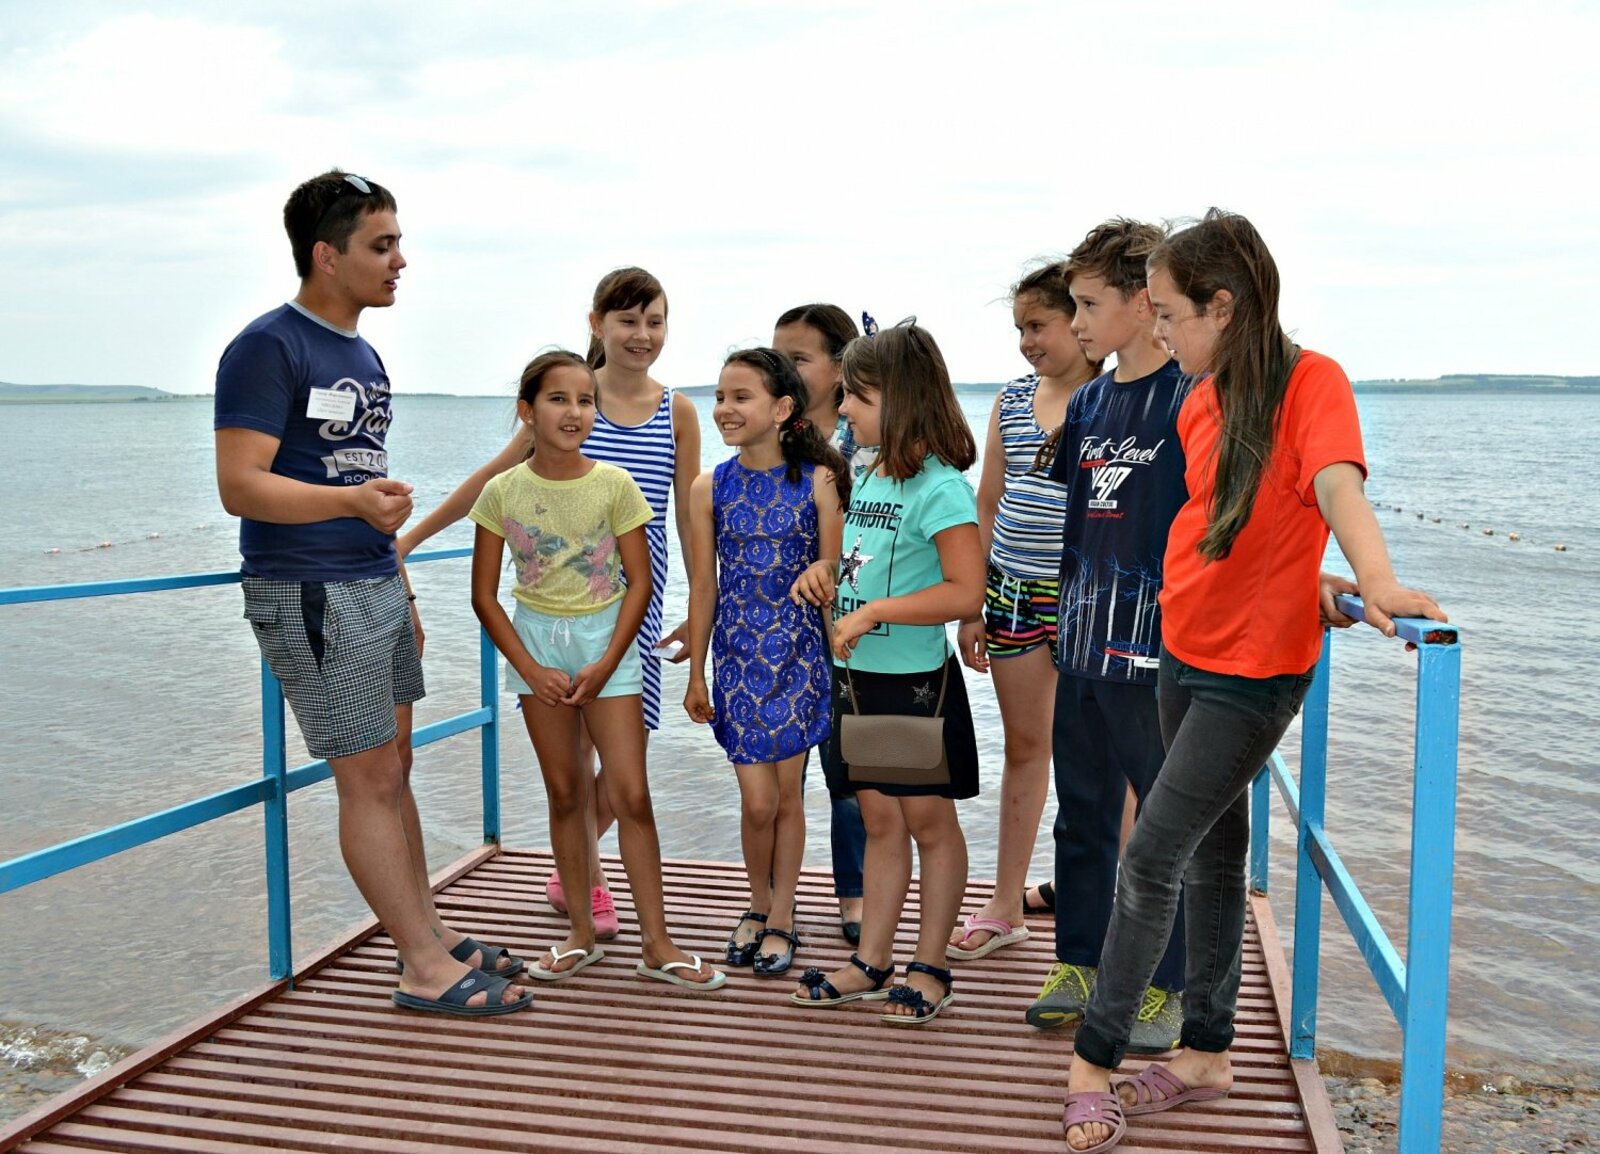 Воспитатель третьего отряда  Линар Максютов (крайний слева)  рассказывает ребятам об озере.